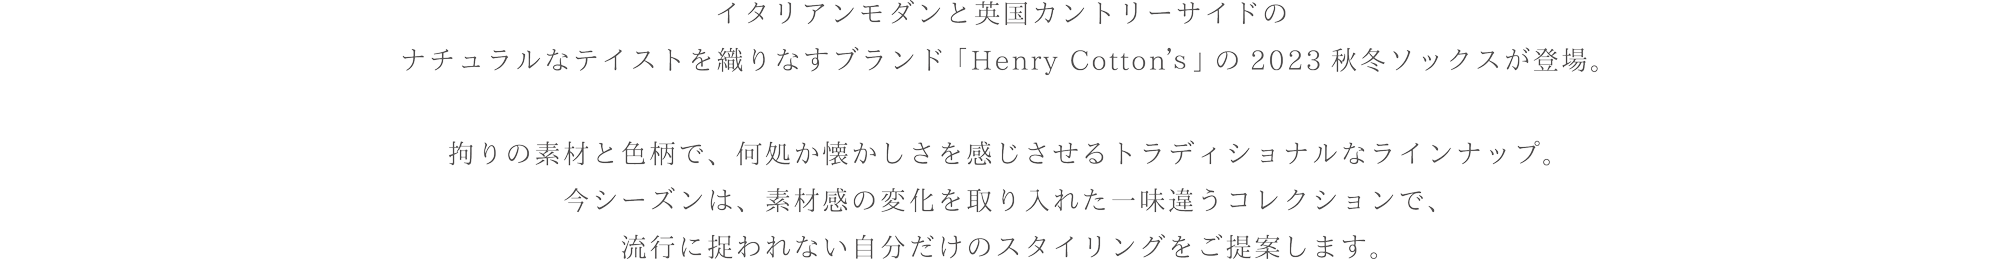 イタリアンモダンと英国カントリーサイドのナチュラルなテイストを織りなすブランド「Henry Cotton's」の2023秋冬ソックスが登場。こだわりの素材と色柄で、どこか懐かしさを感じさせるトラディショナルなラインナップ。今シーズンは、素材感の変化を取り入れた一味違うコレクションで、流行に捉われない自分だけのスタイリングをご提案します。